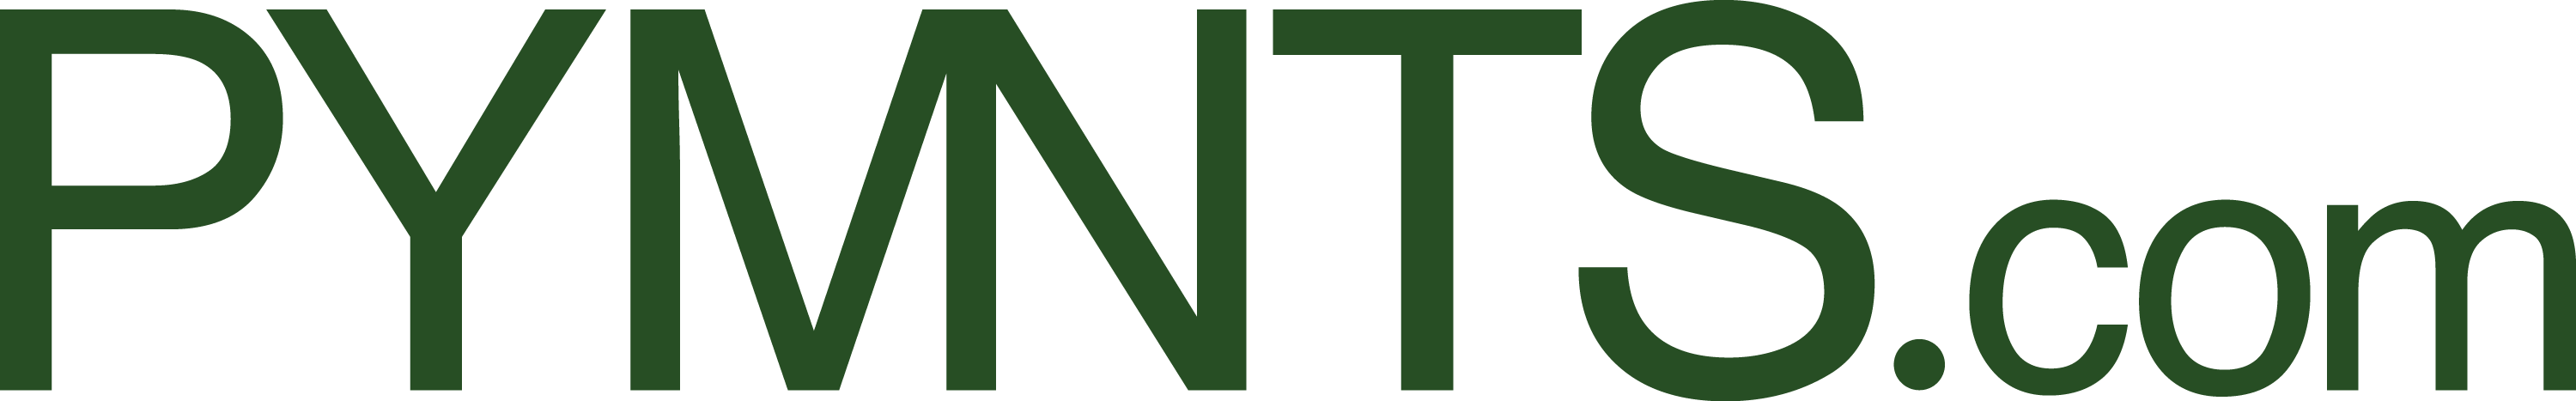 PYMNTS Logo